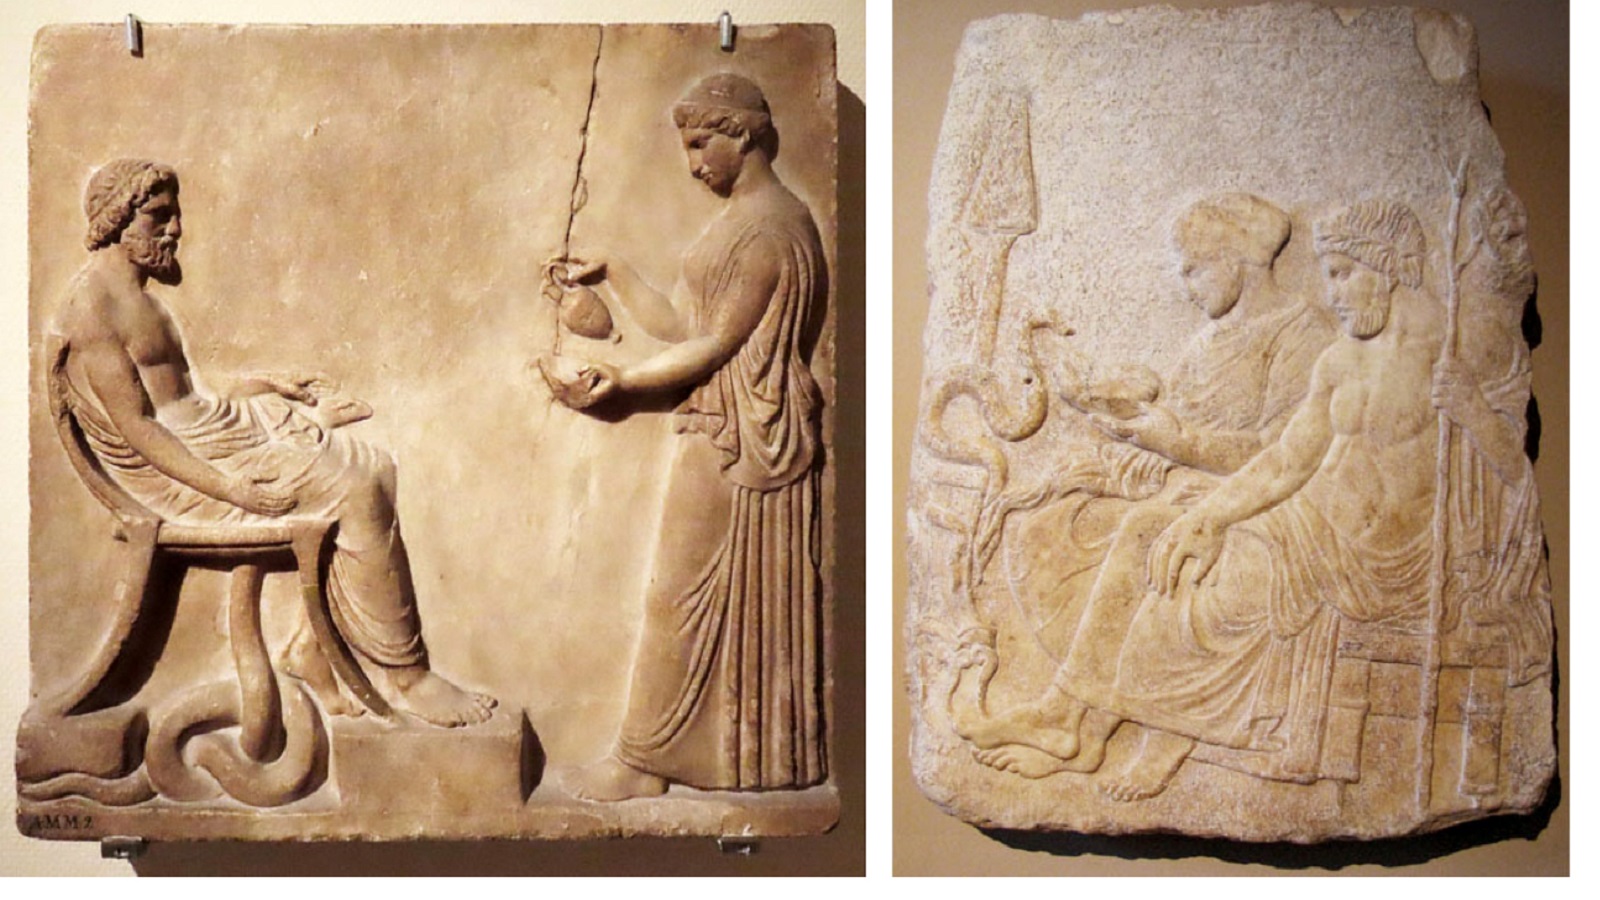 اسقليبيوس مع ابنته هيجيا، من القرن الخامس ق م من محفوظات متحف أسطنبول، ولوح من القرن الميلادي الأول متحف لايدن